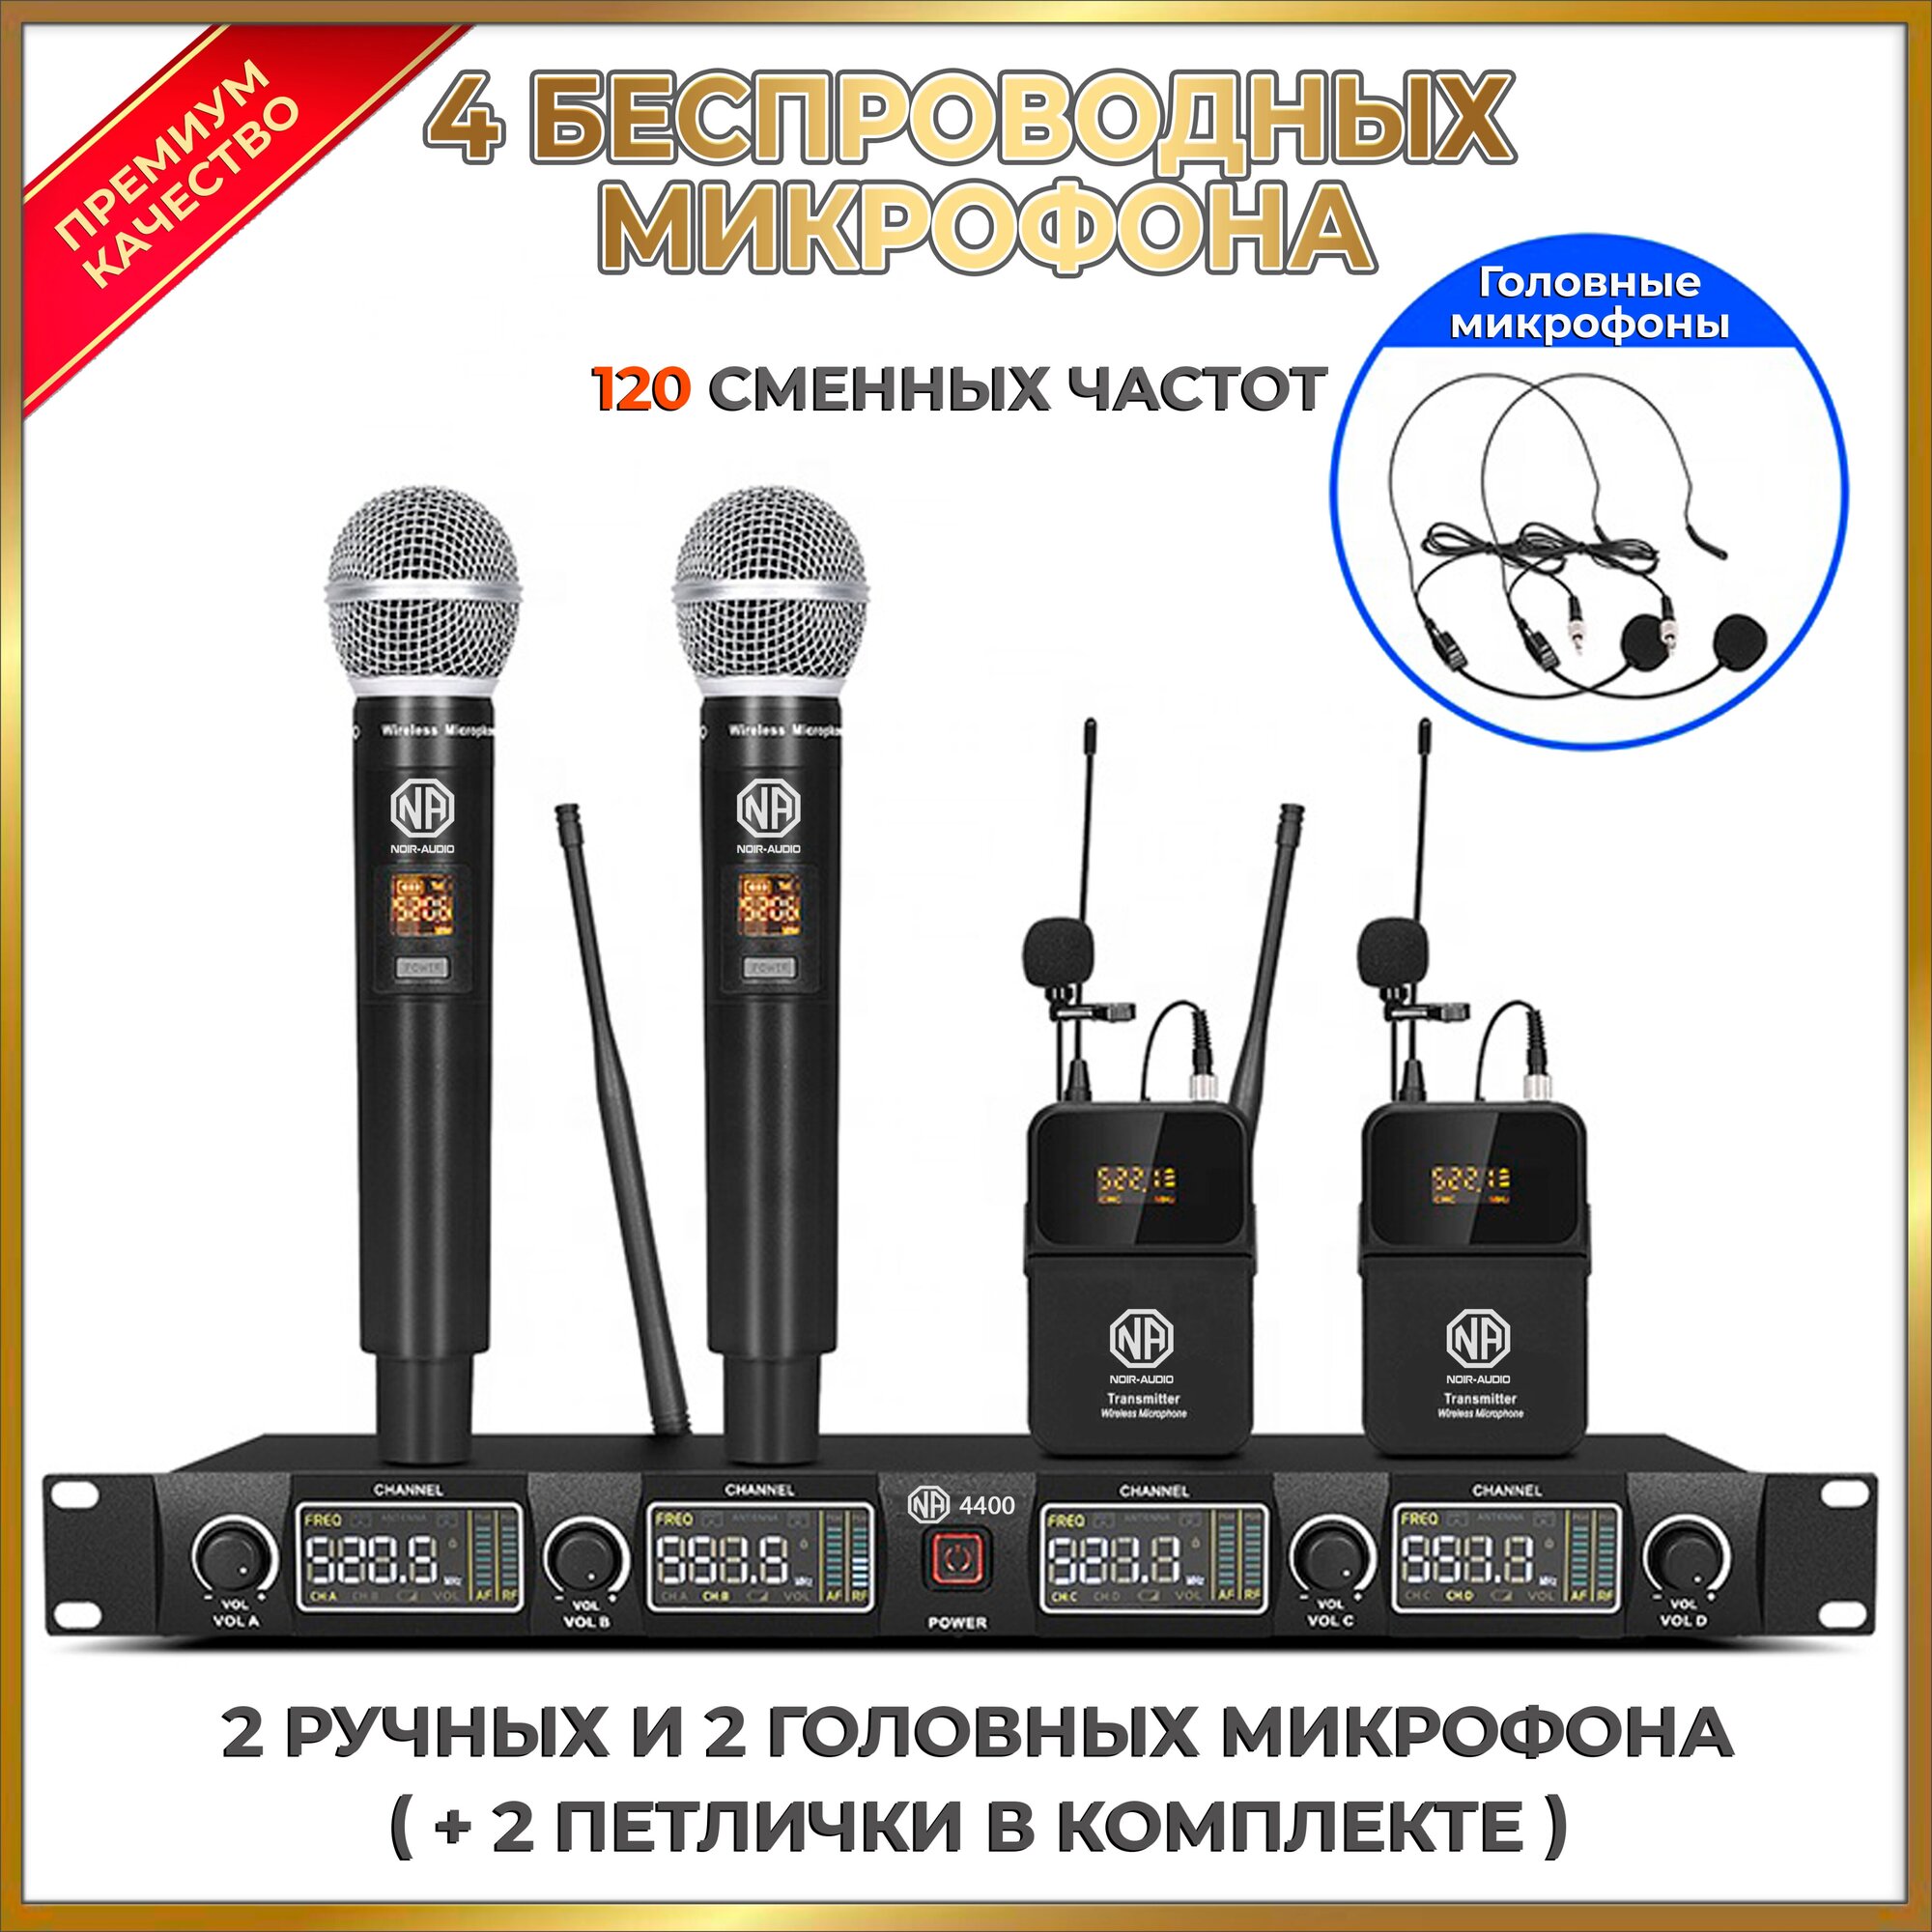 Беспроводной микрофон NOIR-audio U-4400 Handheld/Bodypack для вокала, для караоке, для мероприятий, c ручным, головным и петличным радиомикрофонами